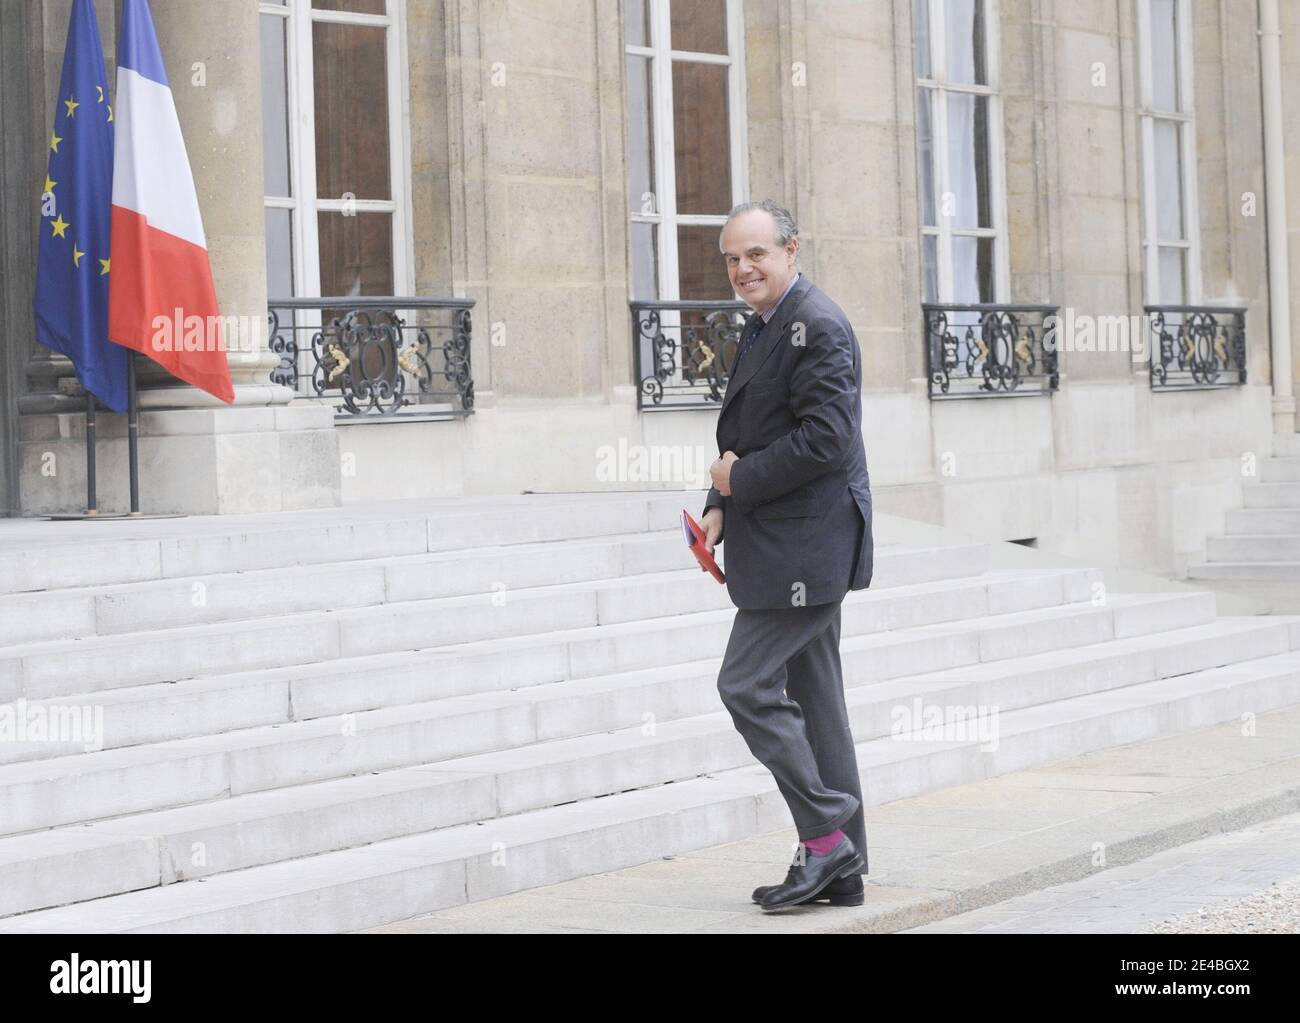 Il ministro francese della Cultura Frederic Mitterrand arriva a Elysee Palace a Parigi, in Francia, il 9 settembre 2009 per incontrare il presidente francese e i membri del Consiglio della creazione artistica. Foto di Mousse/ABACAPRESS.COM Foto Stock